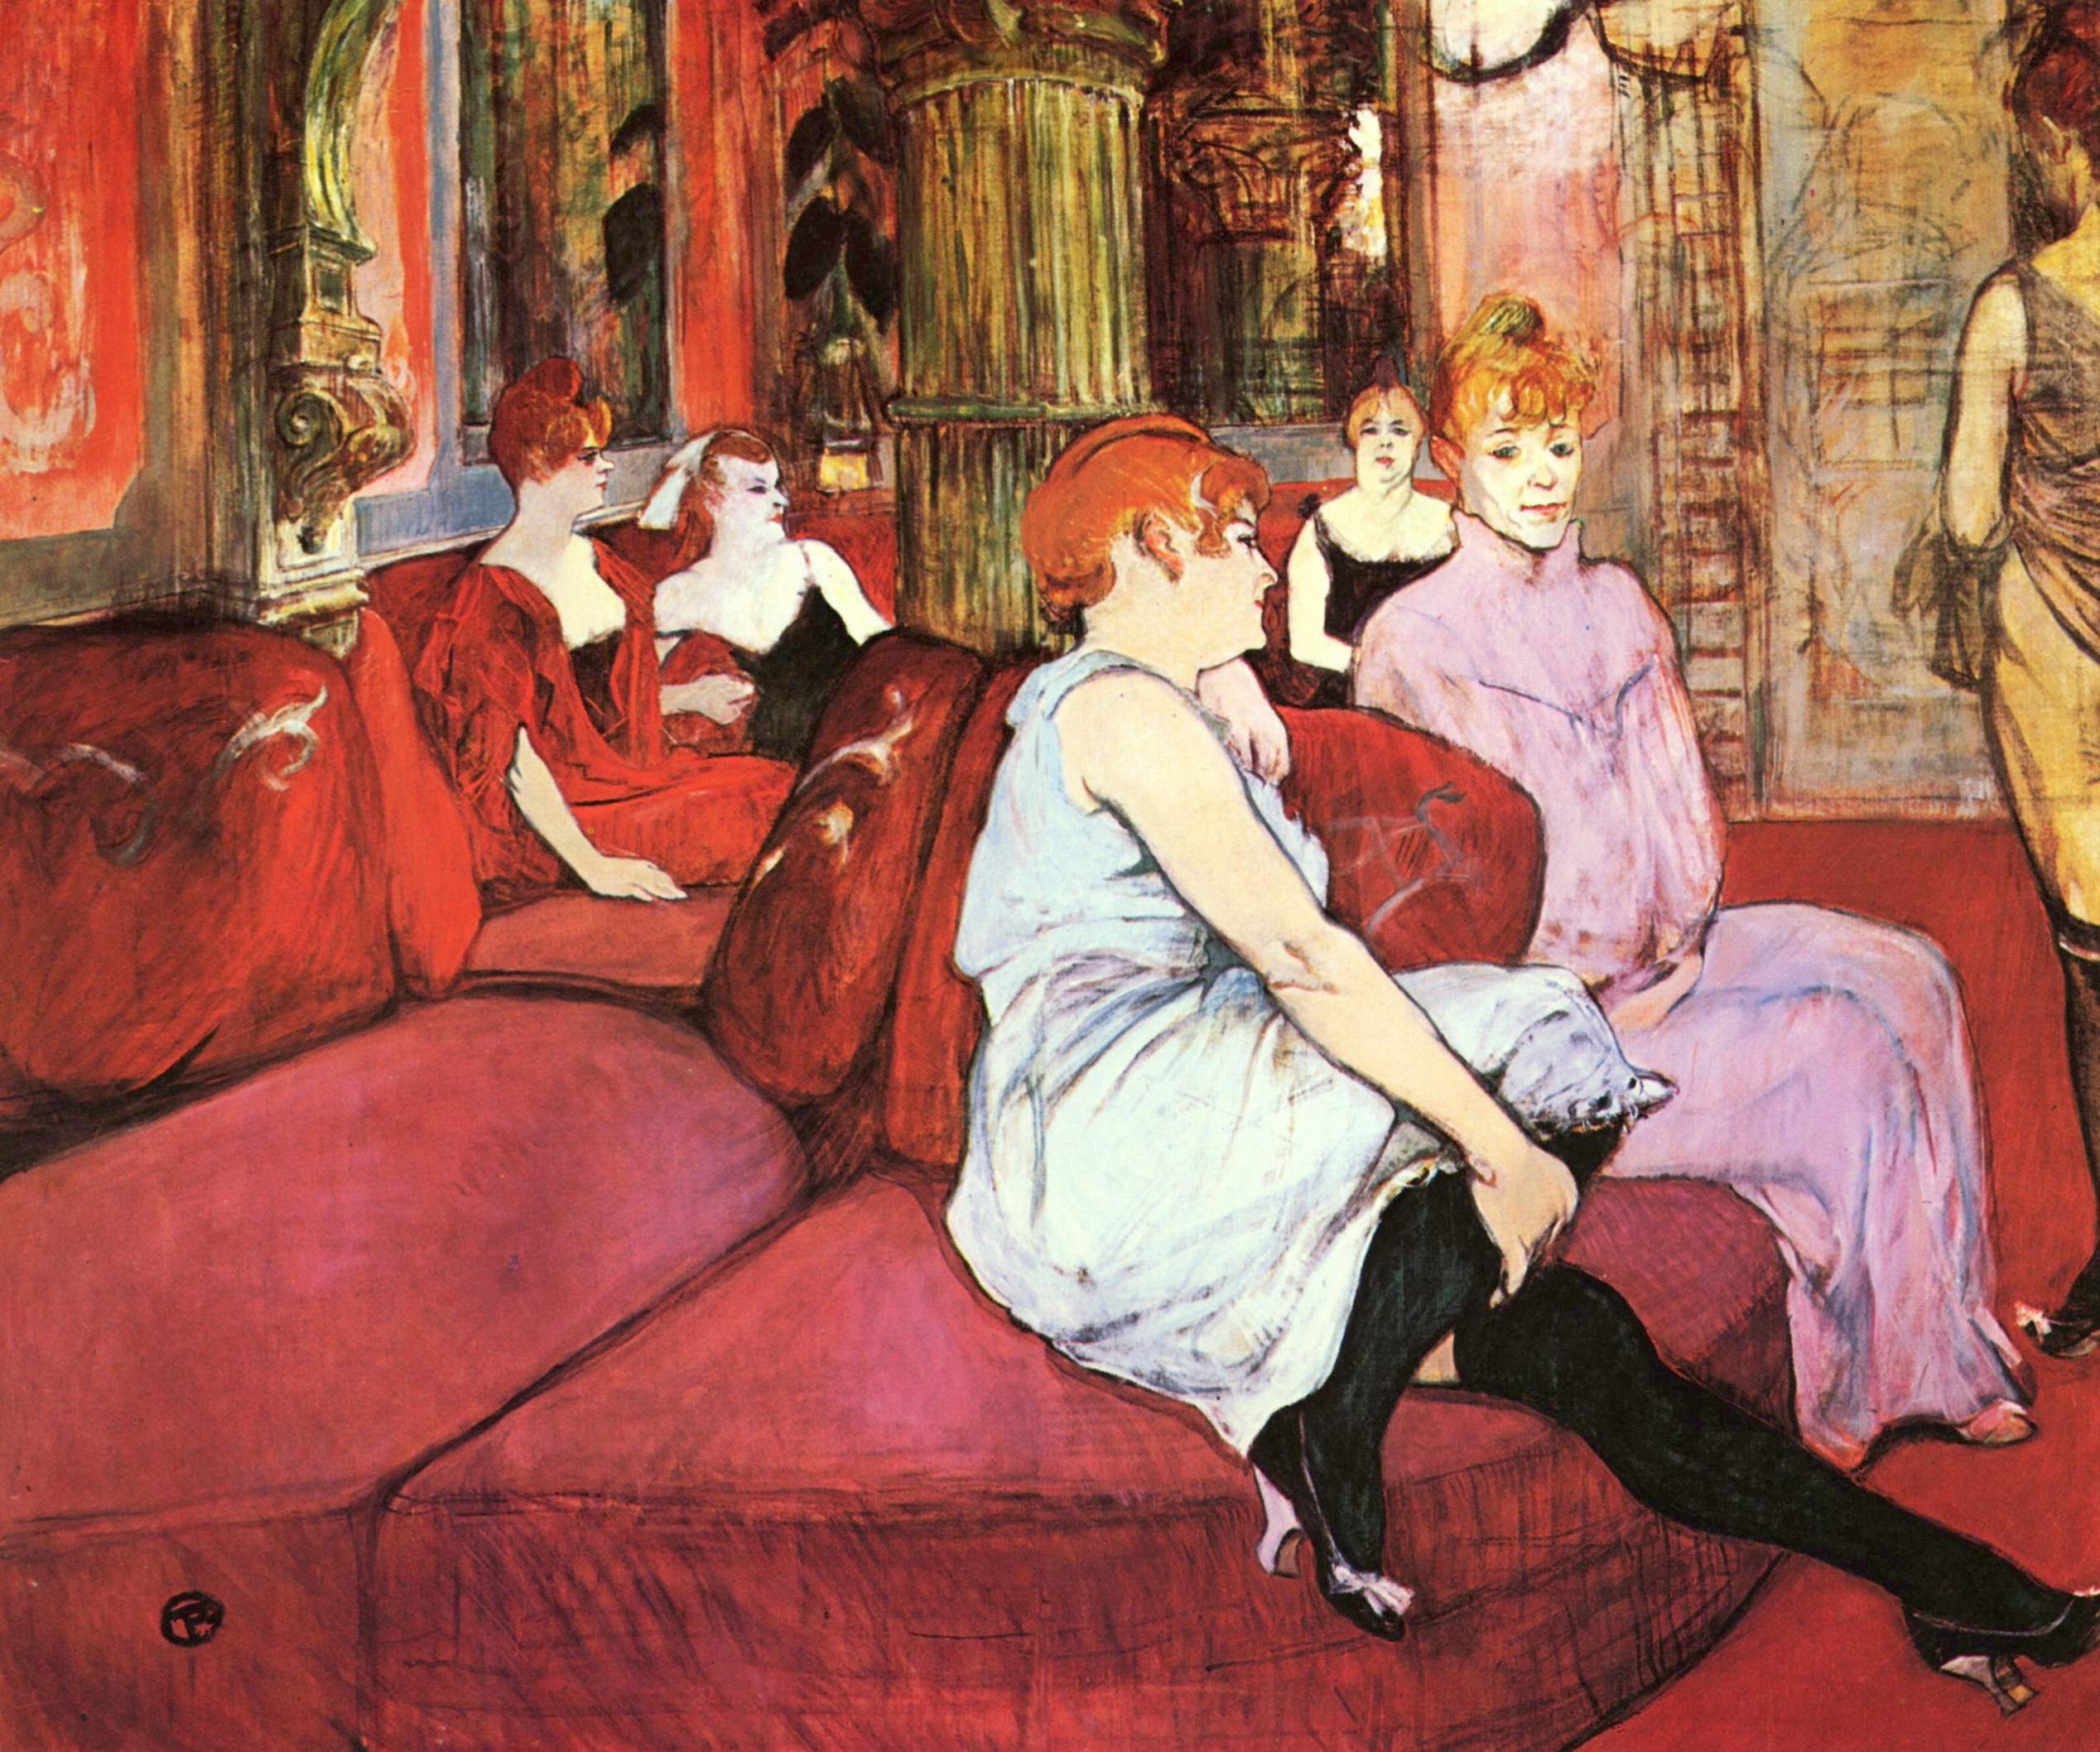 Salon de la Rue des Moulins by Henri de Toulouse-Lautrec - 1894 - 111.5 × 132.5 cm Musée Toulouse-Lautrec d'Albi